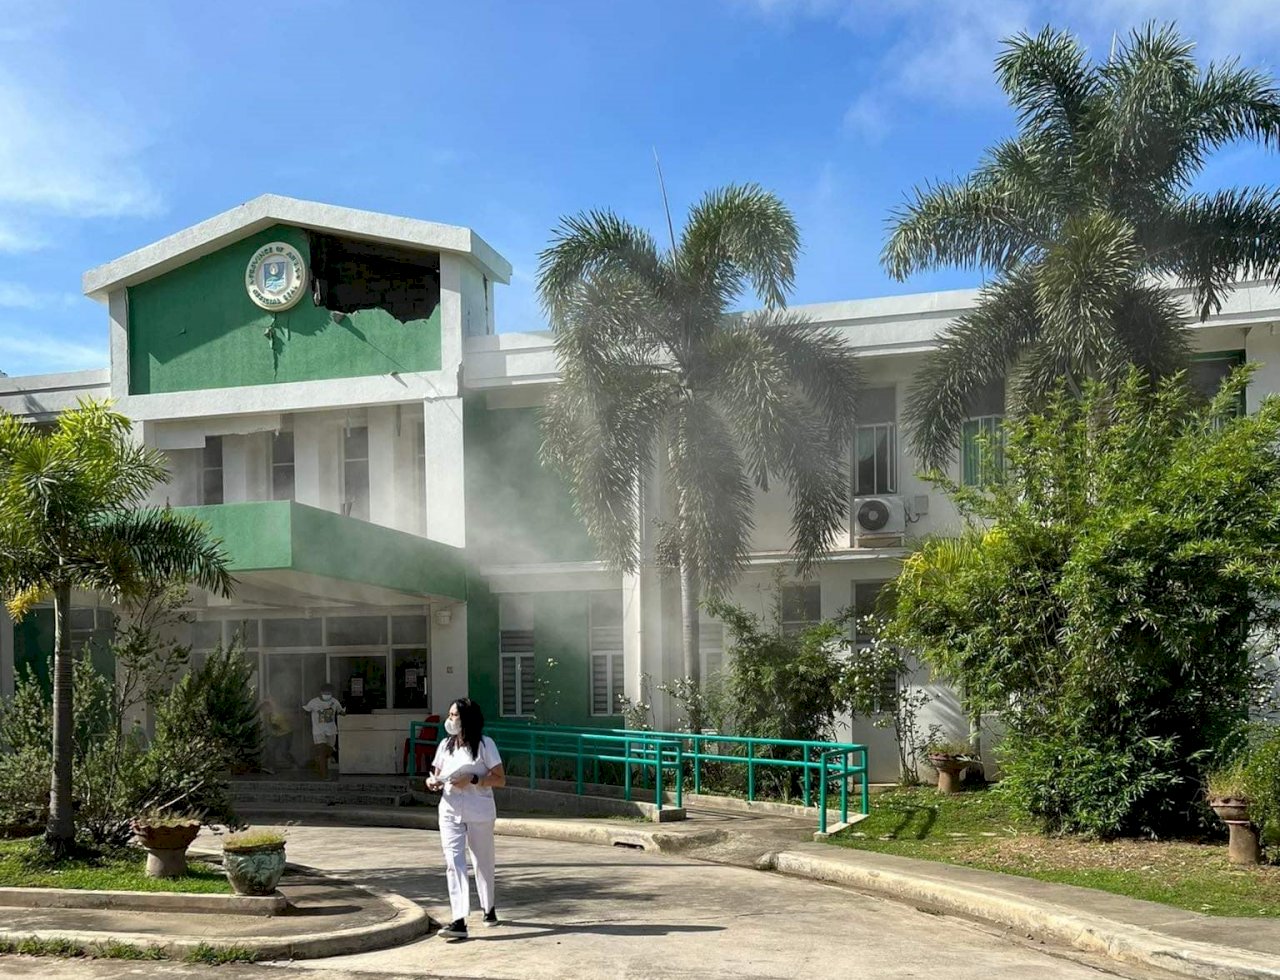 菲律賓強震醫院房屋受損 尚未傳出人員傷亡